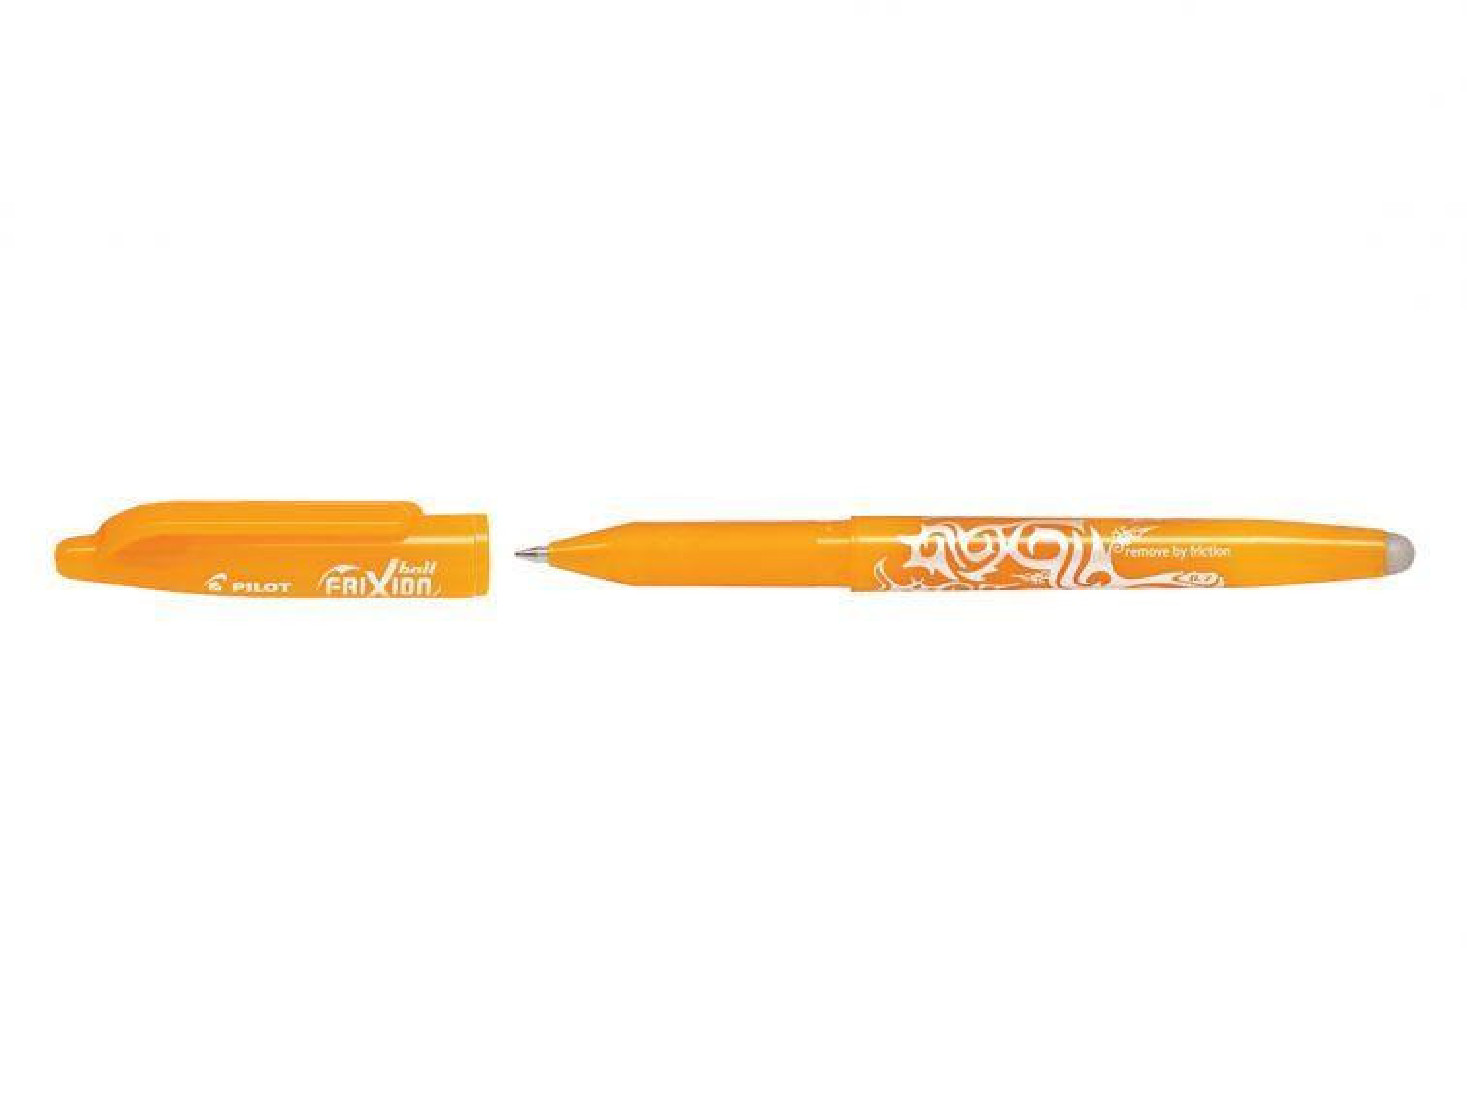 Βall Pen Frixion 0.7 Apricot Orange (Στυλό που σβήνει)Pilot